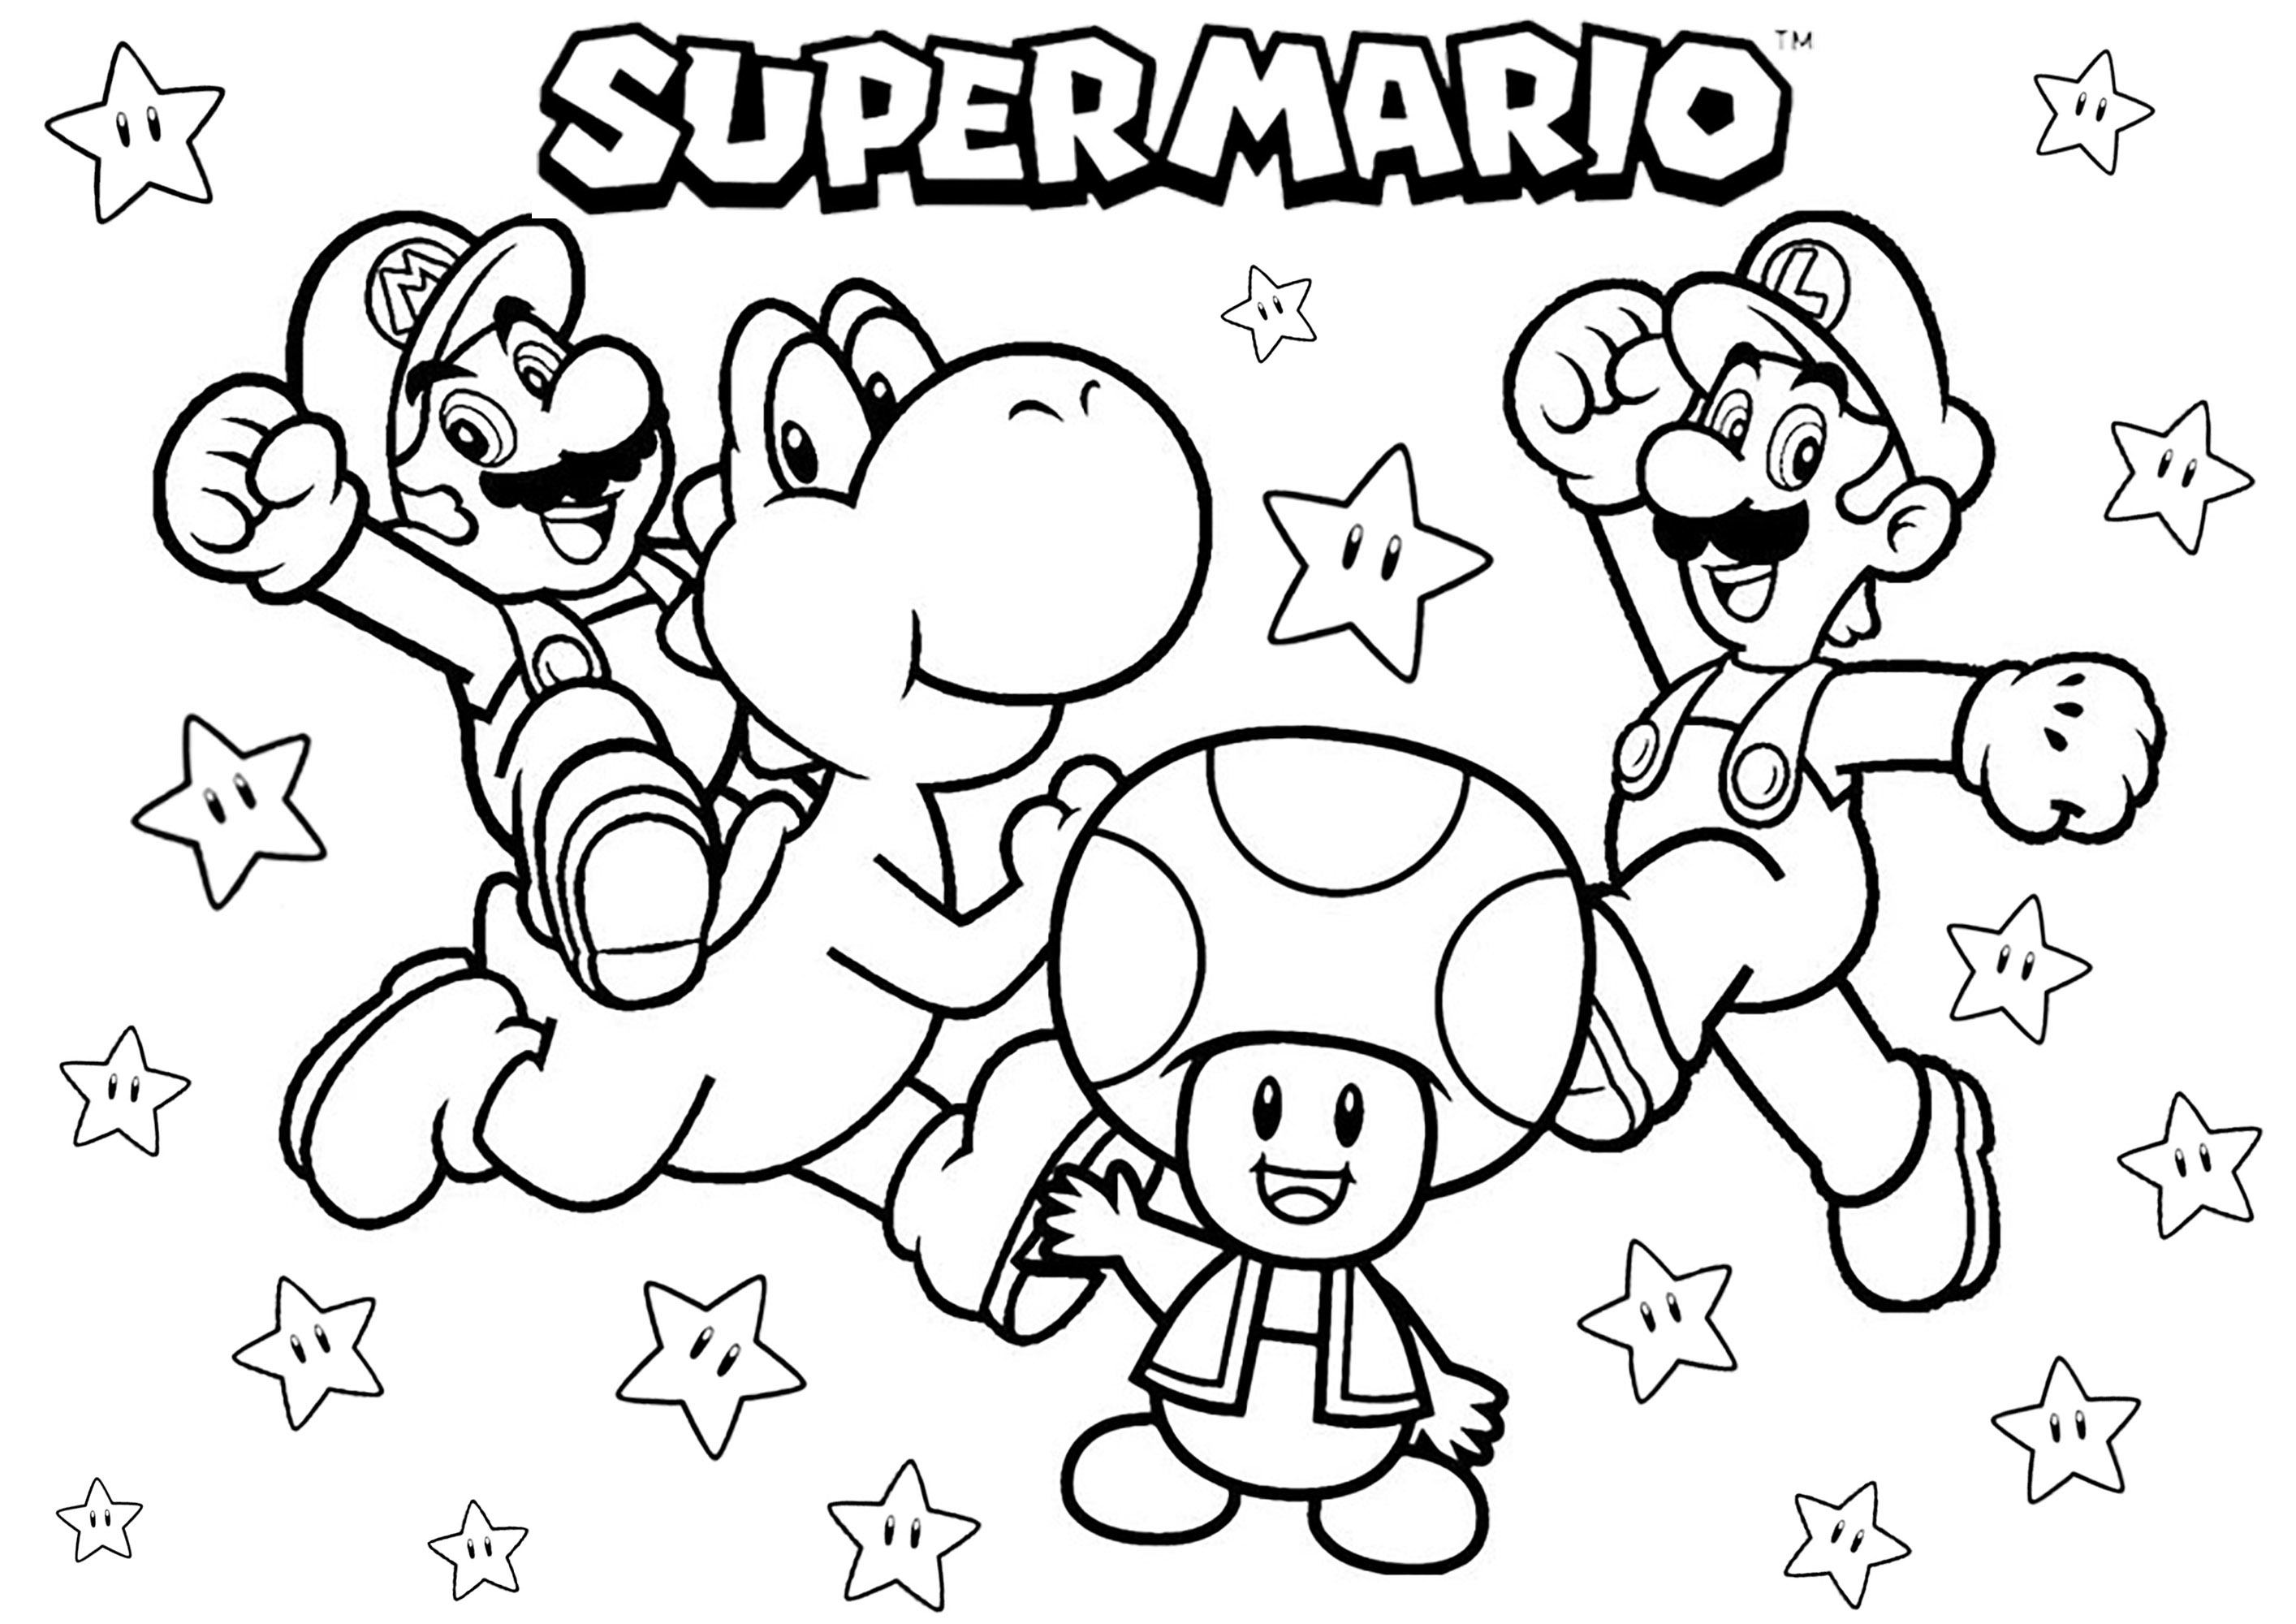 Mario, Luigi, Yoshi und Toad. Erinnere dich an die Zeit, als du Super Mario auf deinem Nintendo-System gespielt hast, dank dieser niedlichen Malvorlage mit den Brüdern Mario und Luigi, dem Dinosaurier Yoshi und dem Pilz Toad ... ganz zu schweigen von den vielen Sternen!